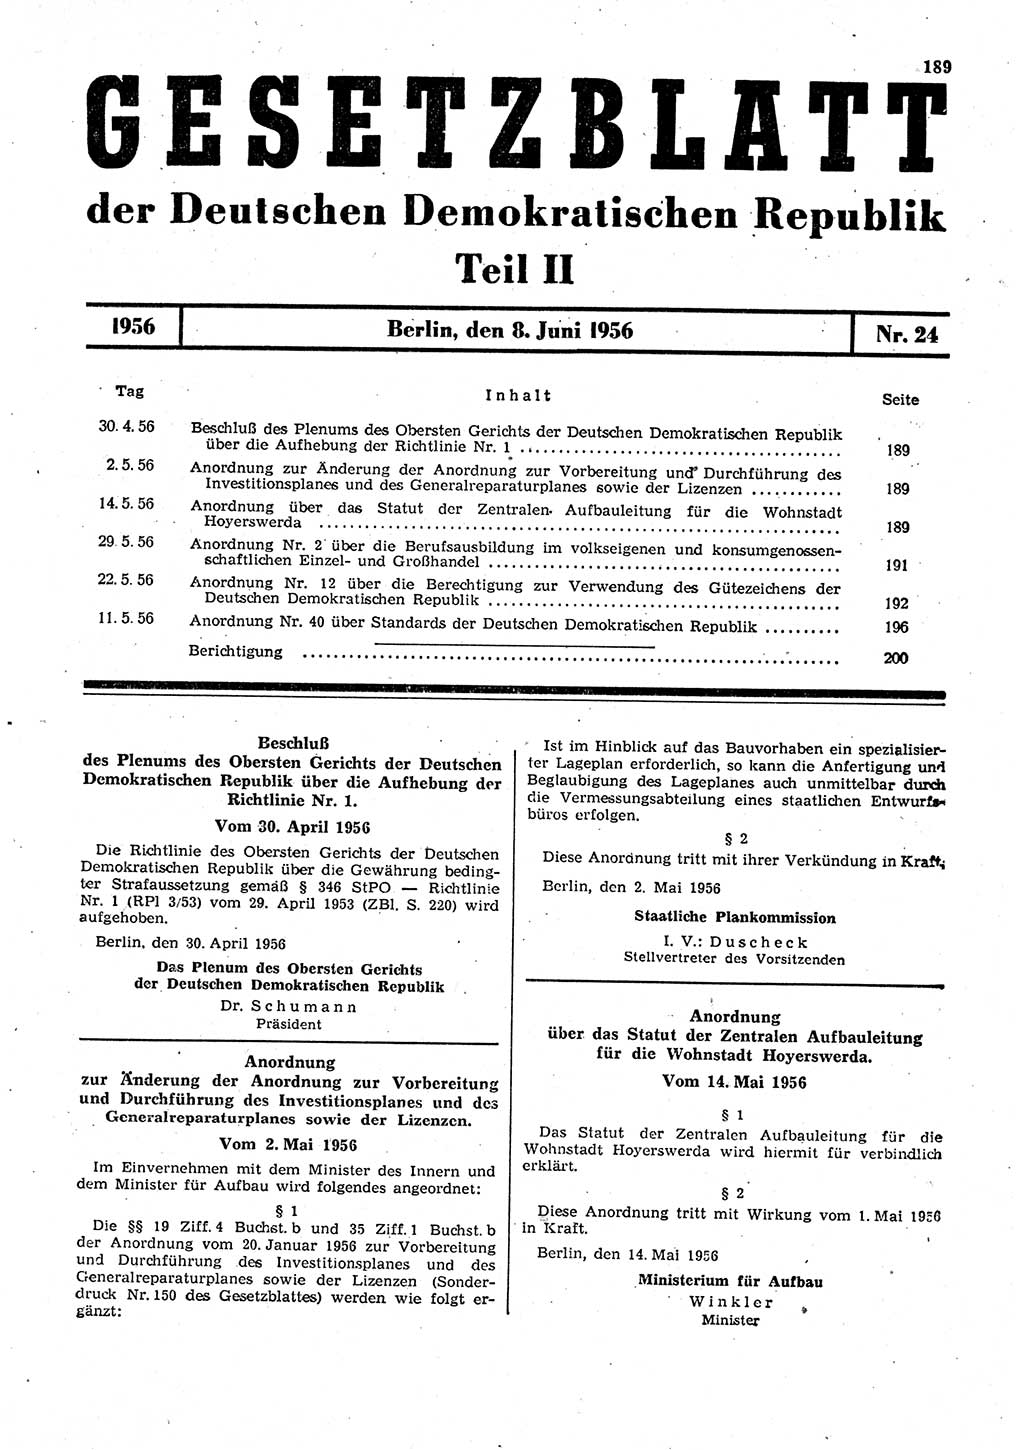 Gesetzblatt (GBl.) der Deutschen Demokratischen Republik (DDR) Teil ⅠⅠ 1956, Seite 189 (GBl. DDR ⅠⅠ 1956, S. 189)